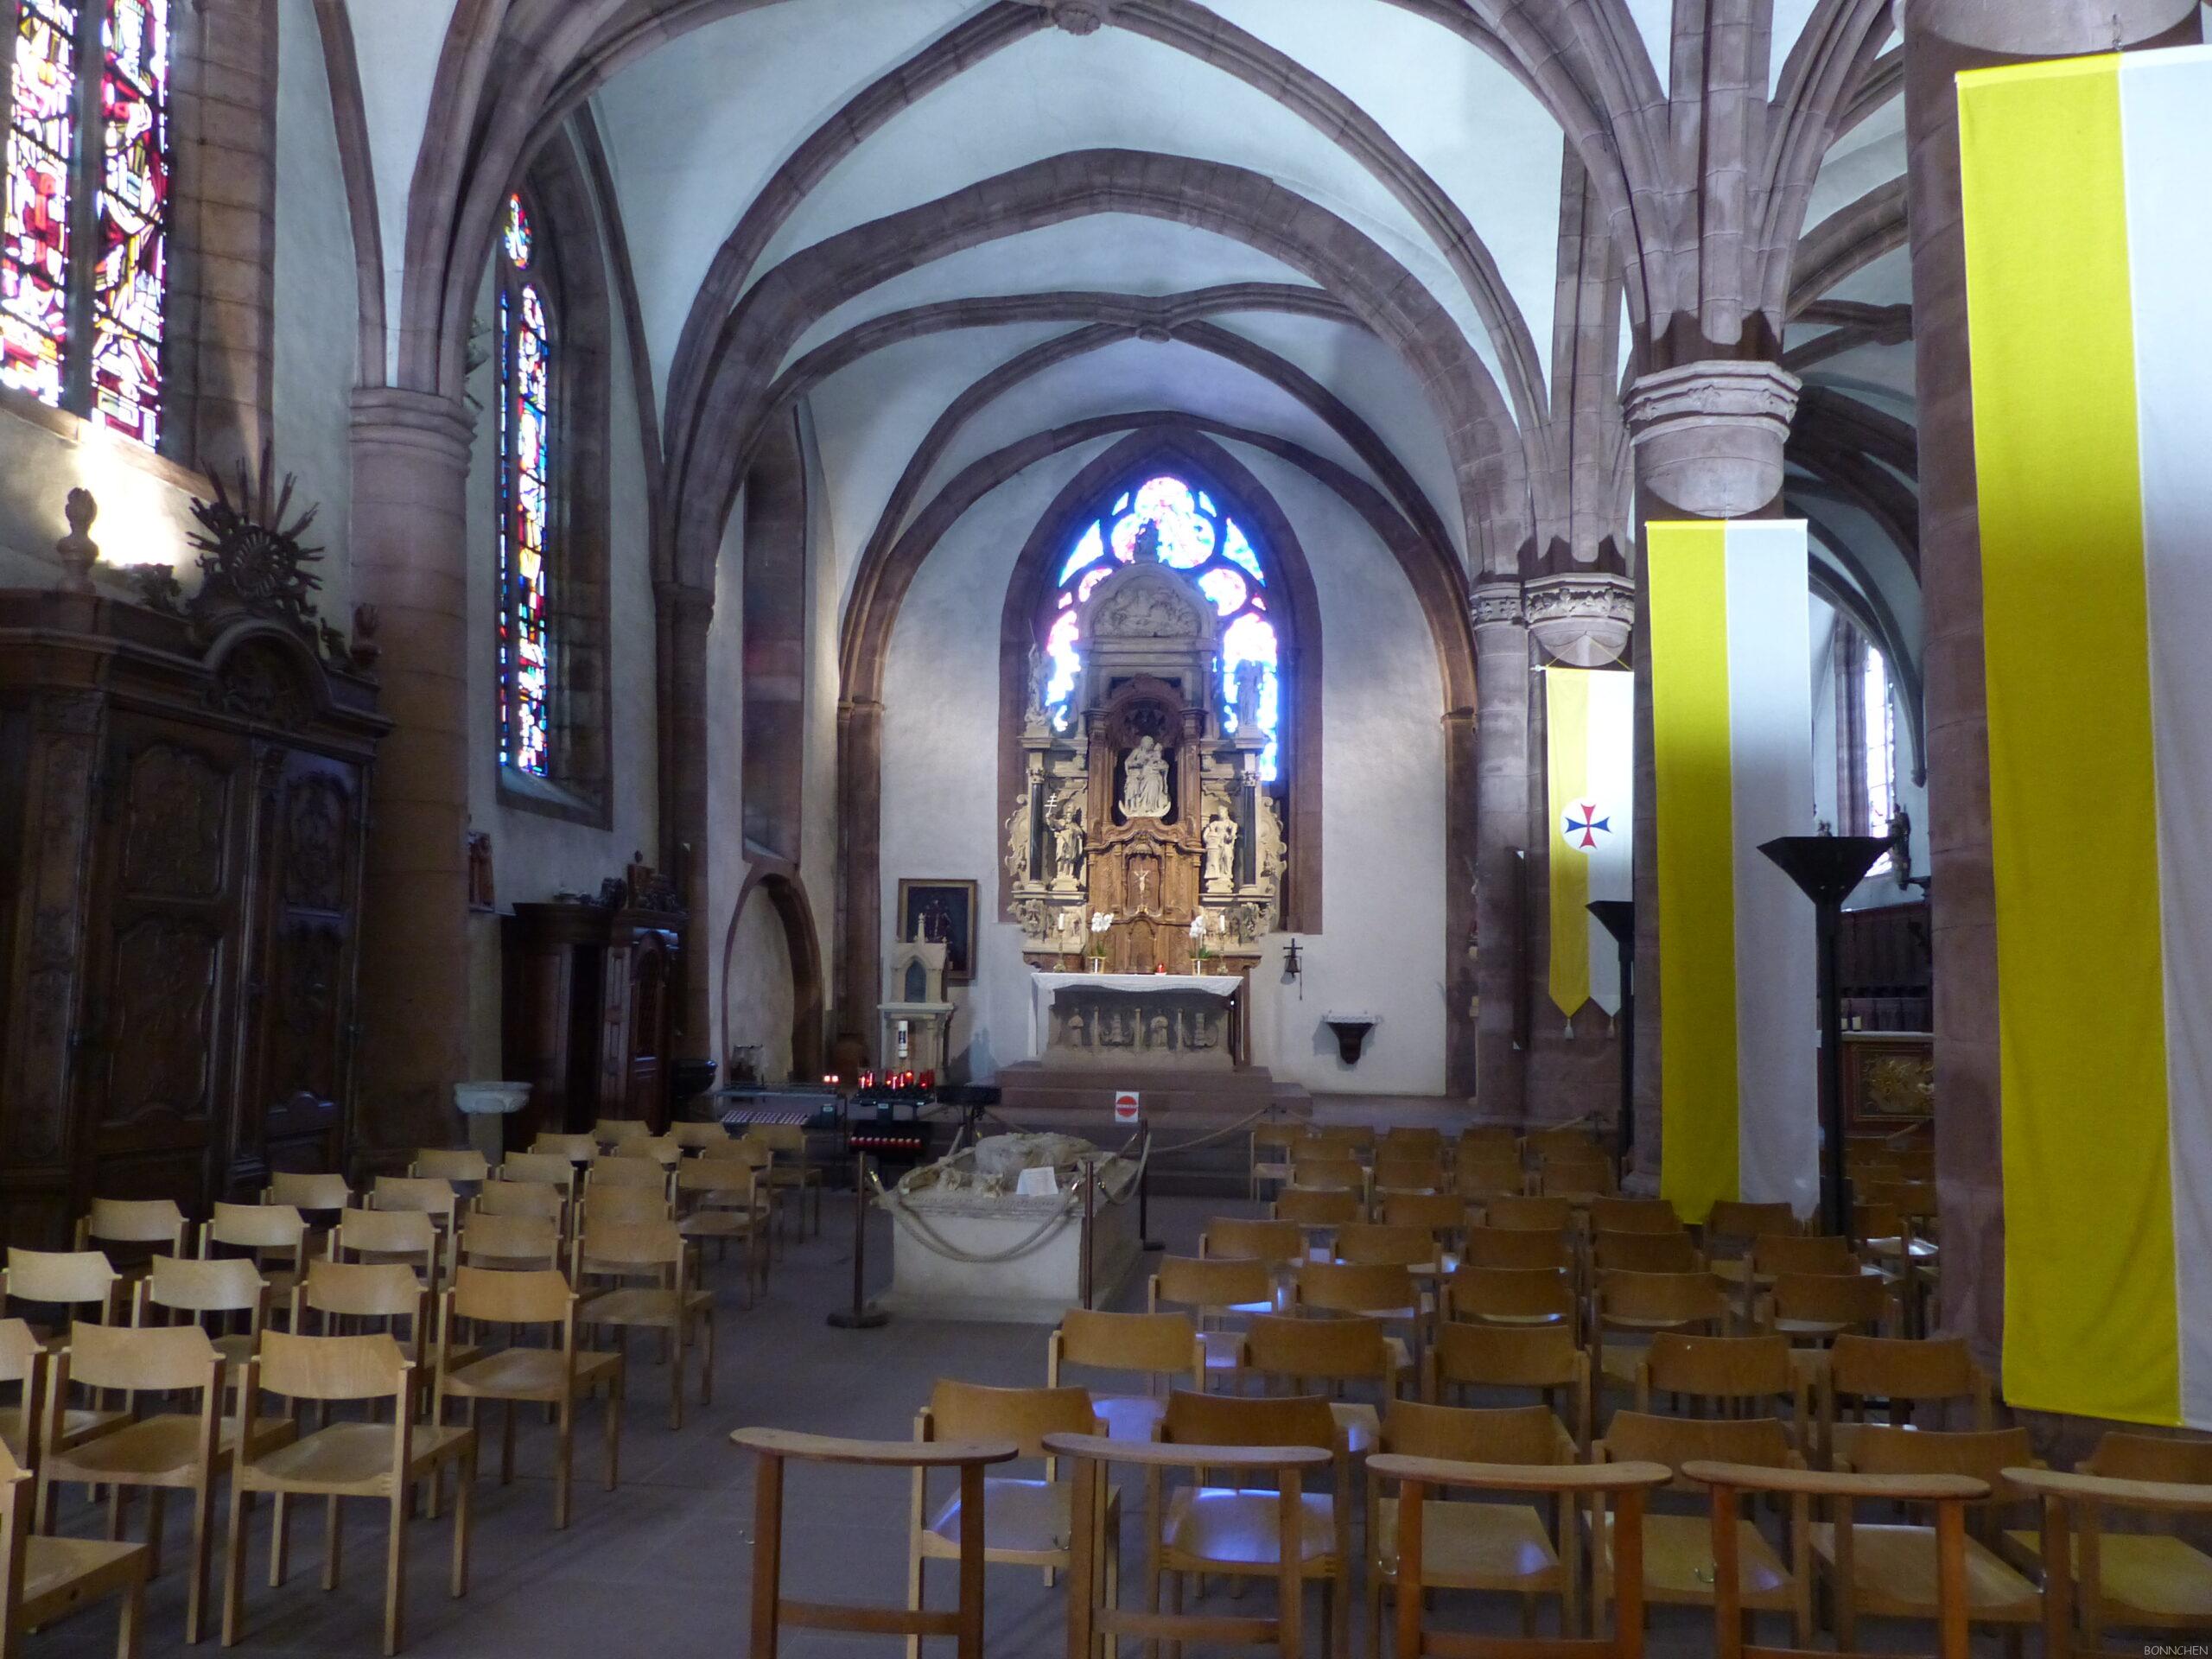 Viandens Trinitarierkirche